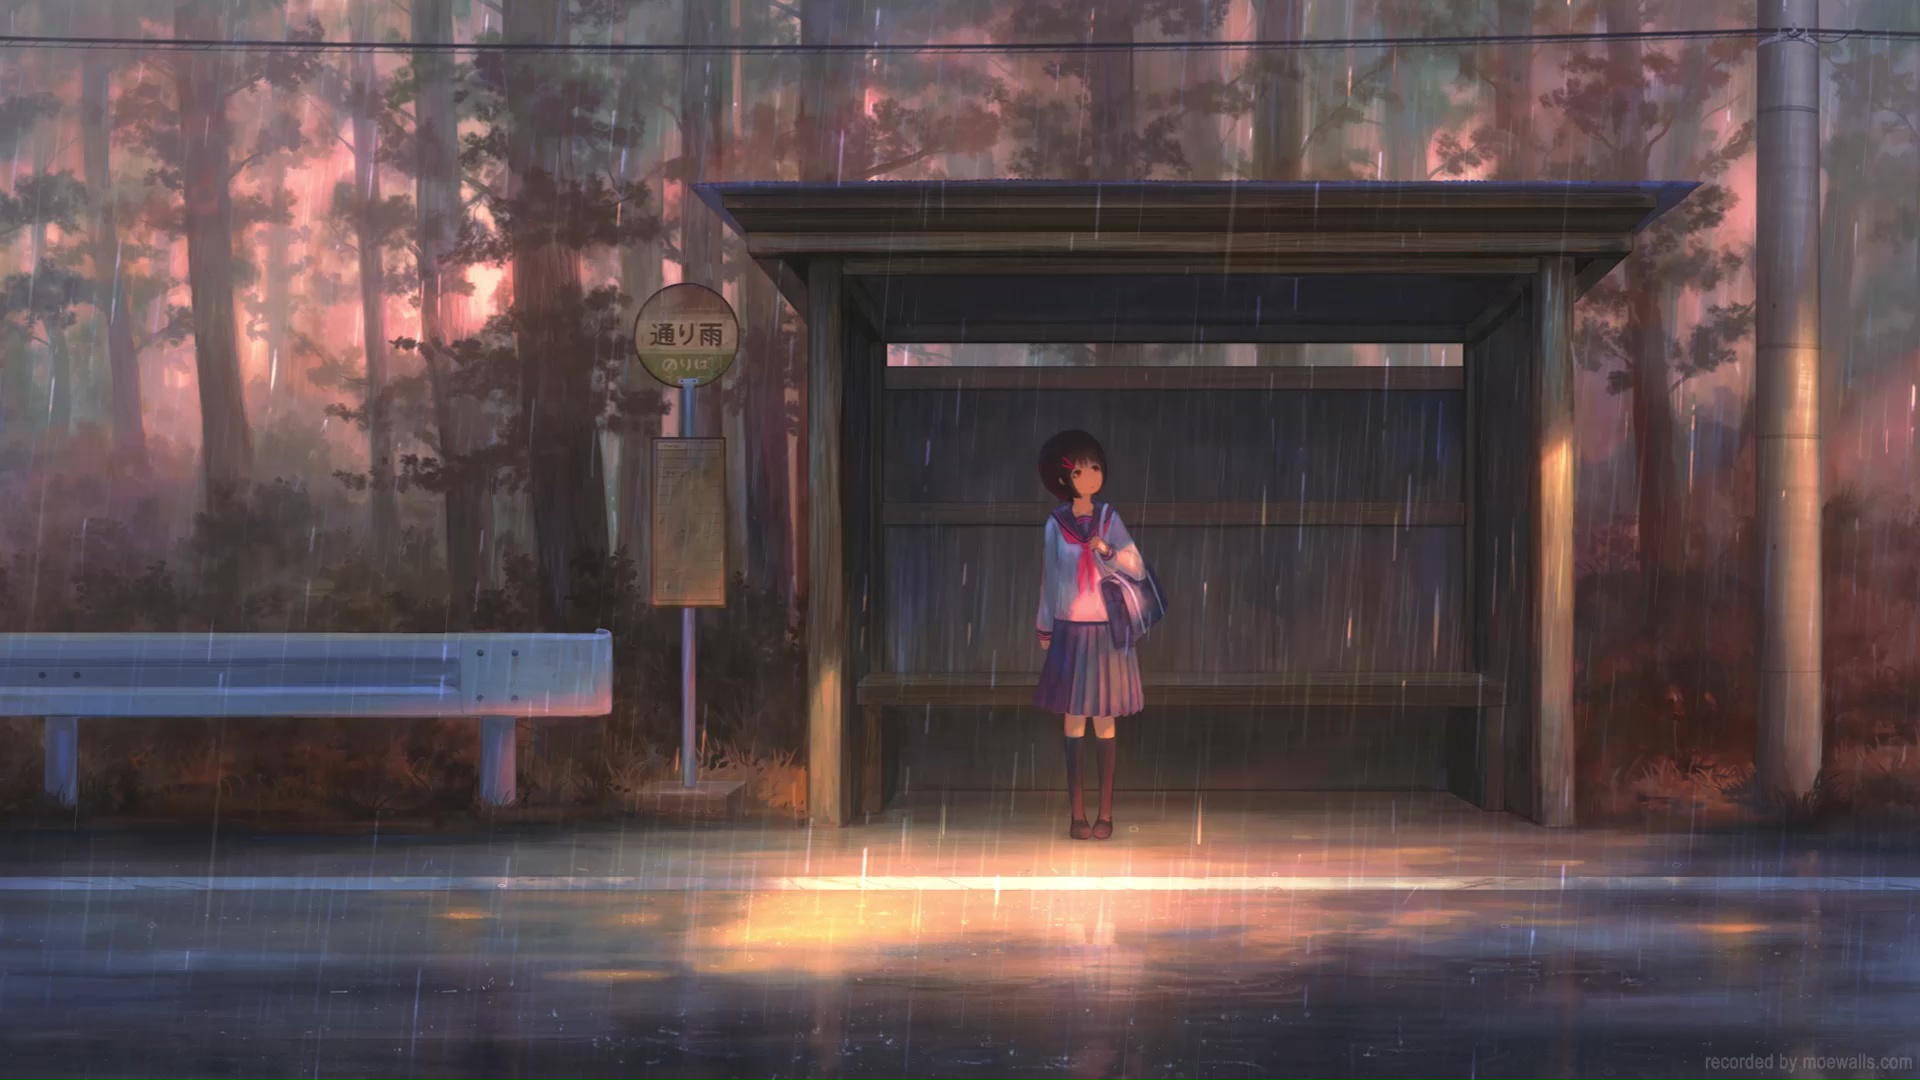 Anime style raining background - YouTube